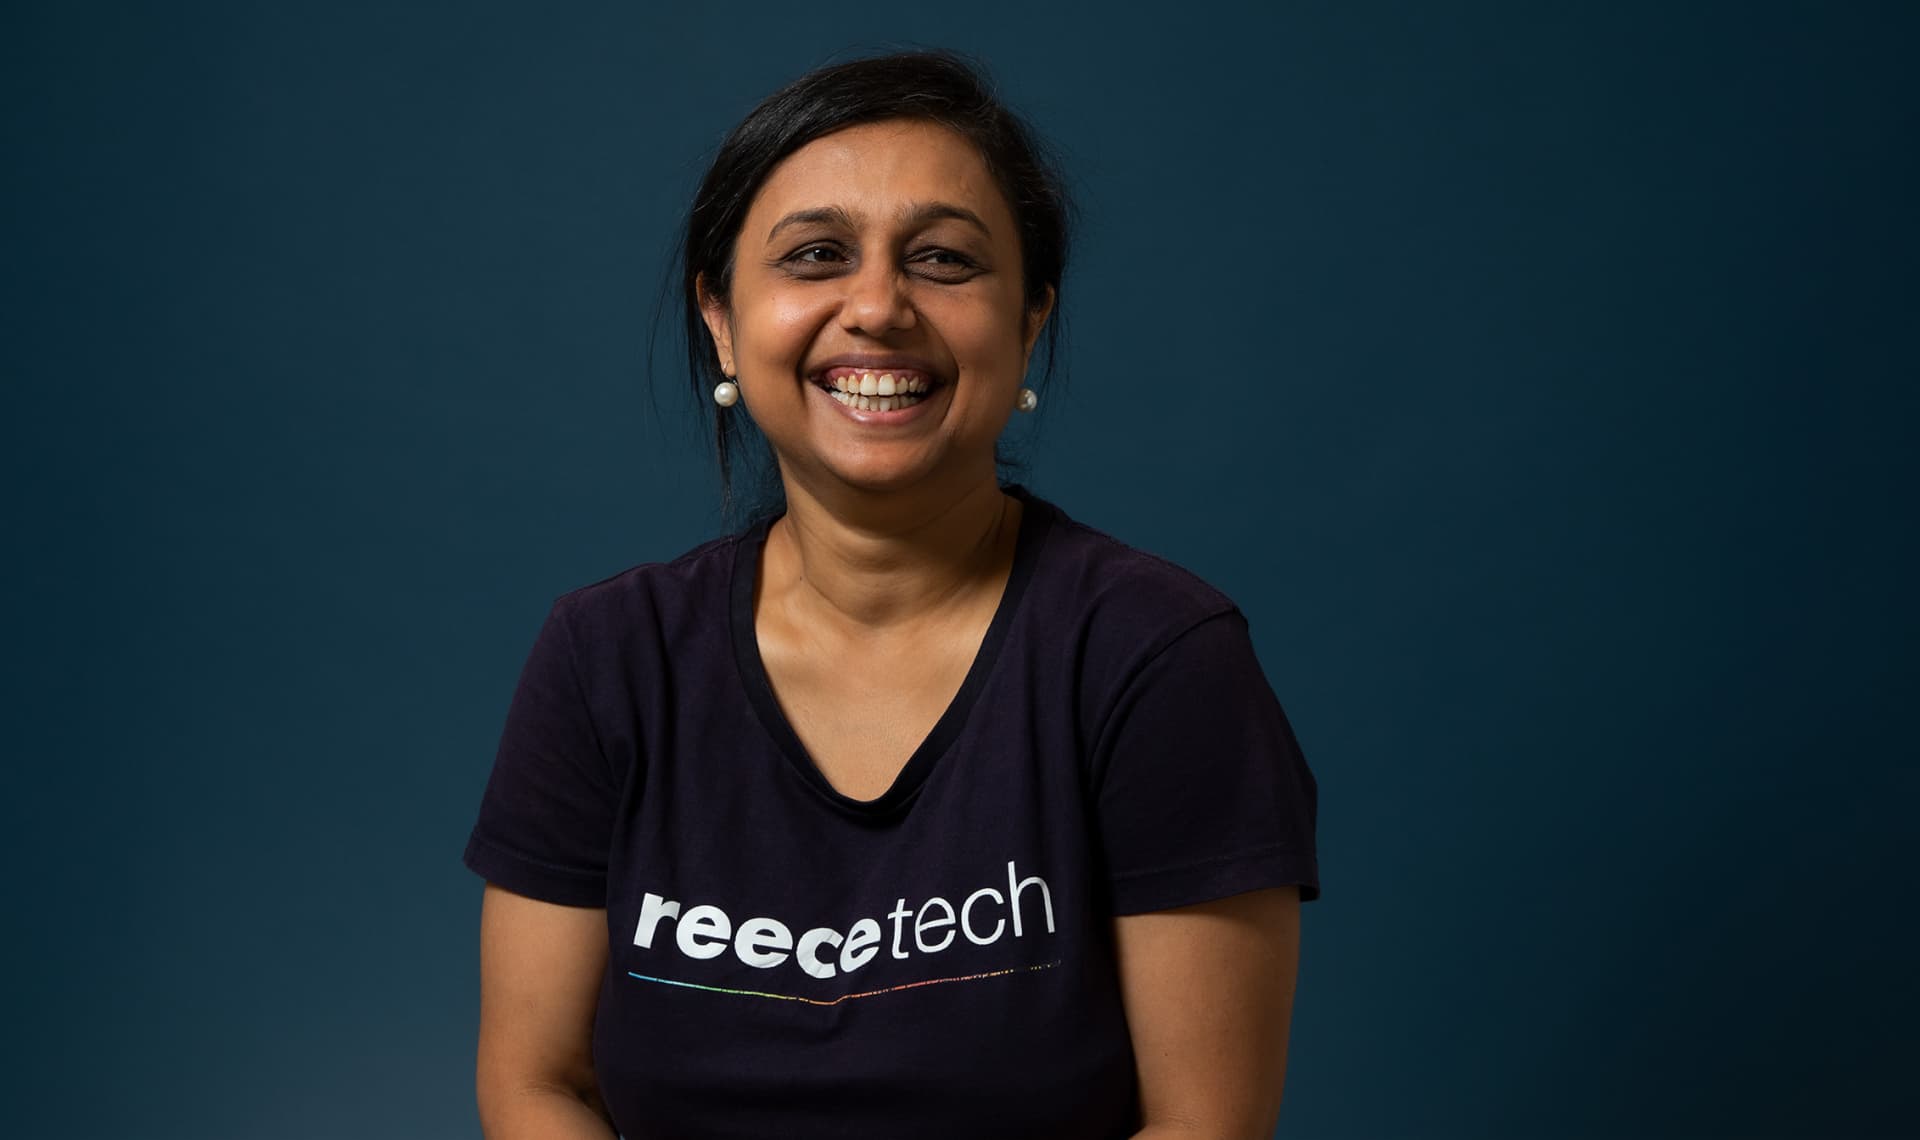 Woman smiling in reecetech t-shirt